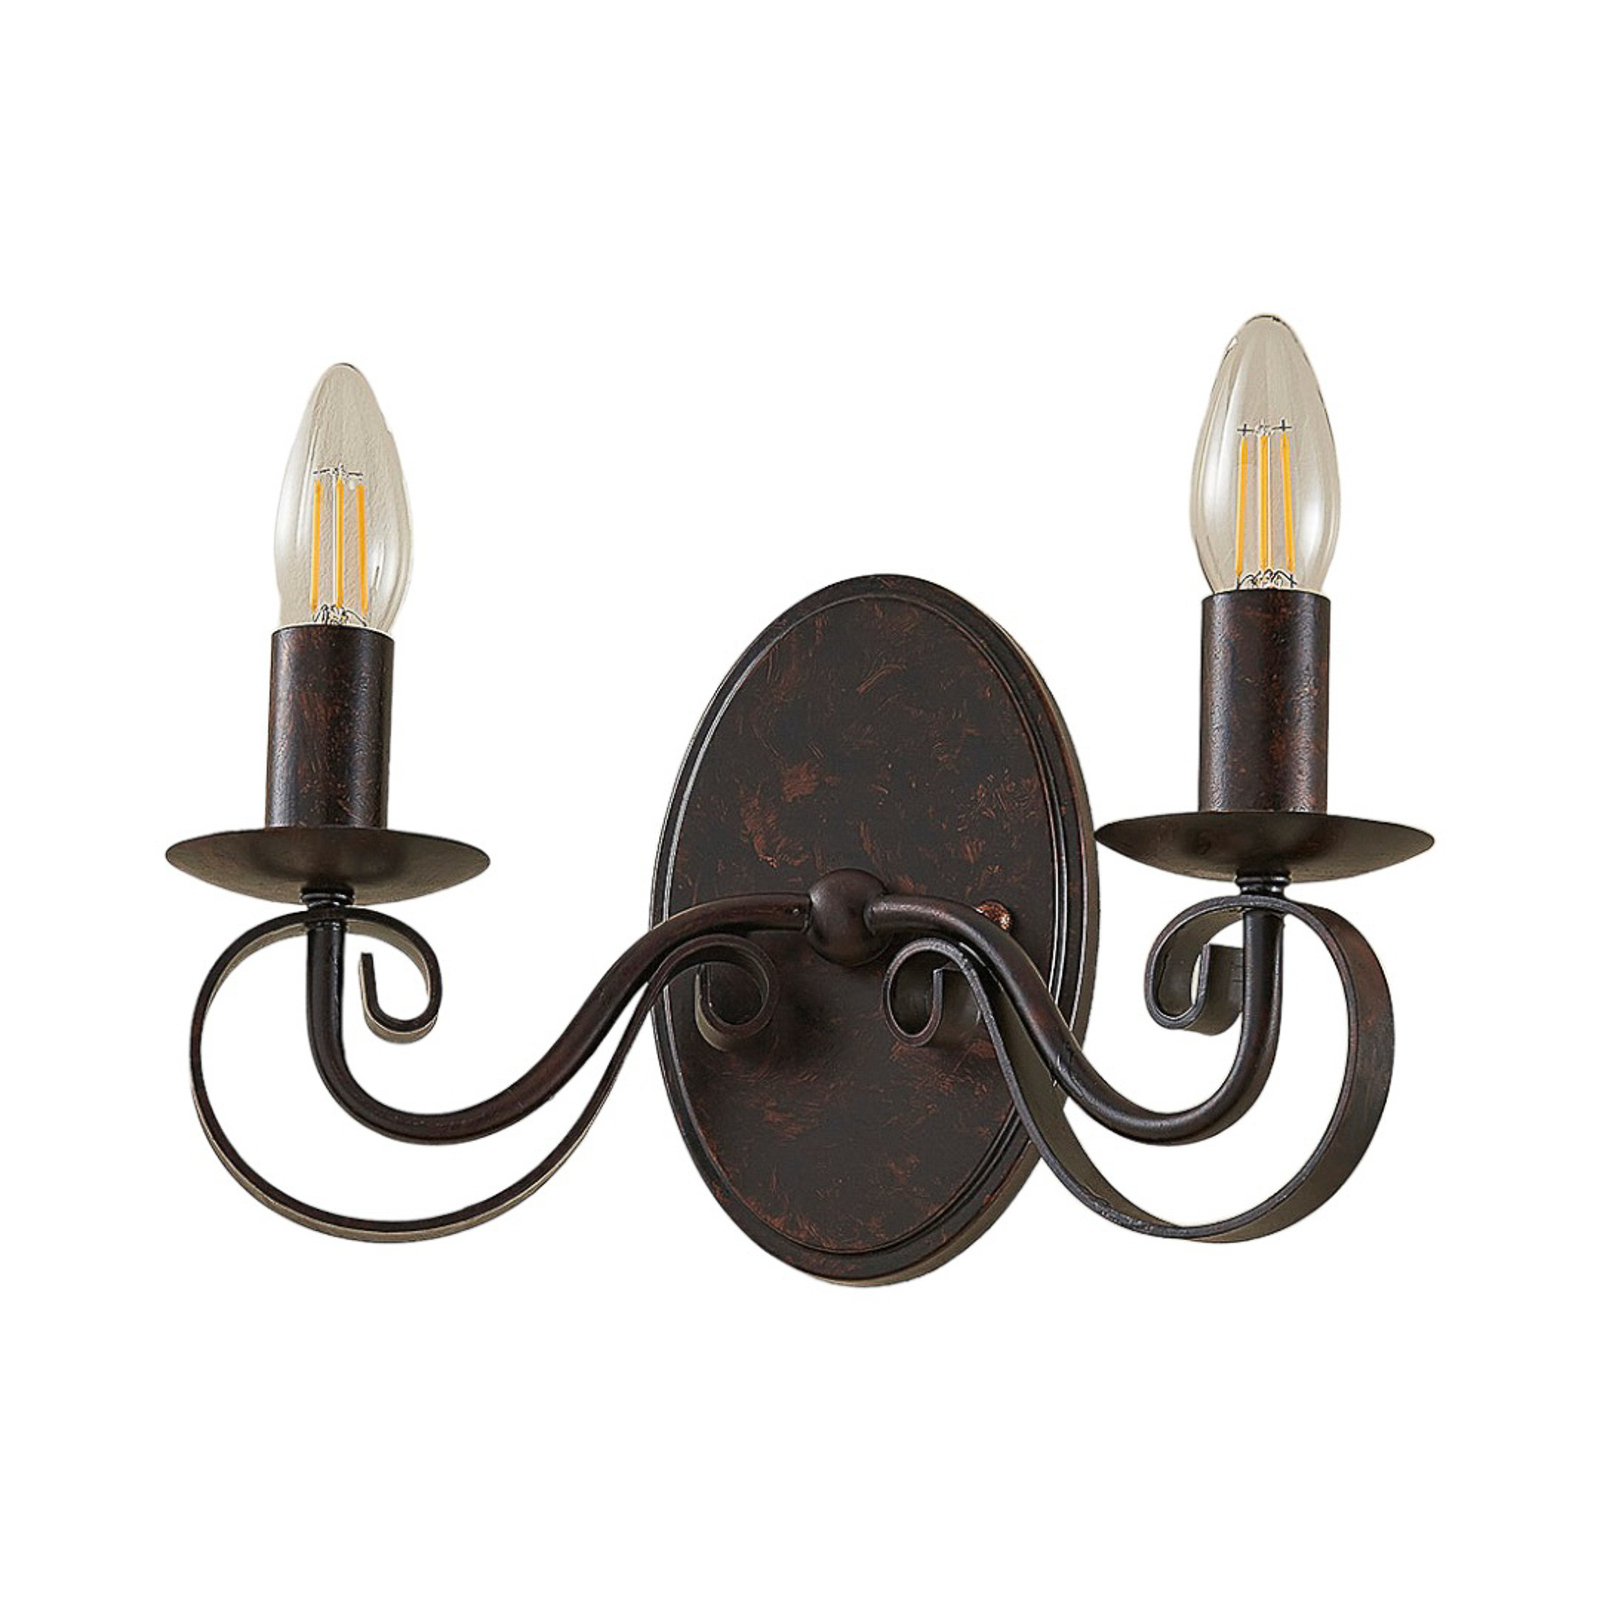 Roestkleurige wandlamp Caleb, 2-lamps